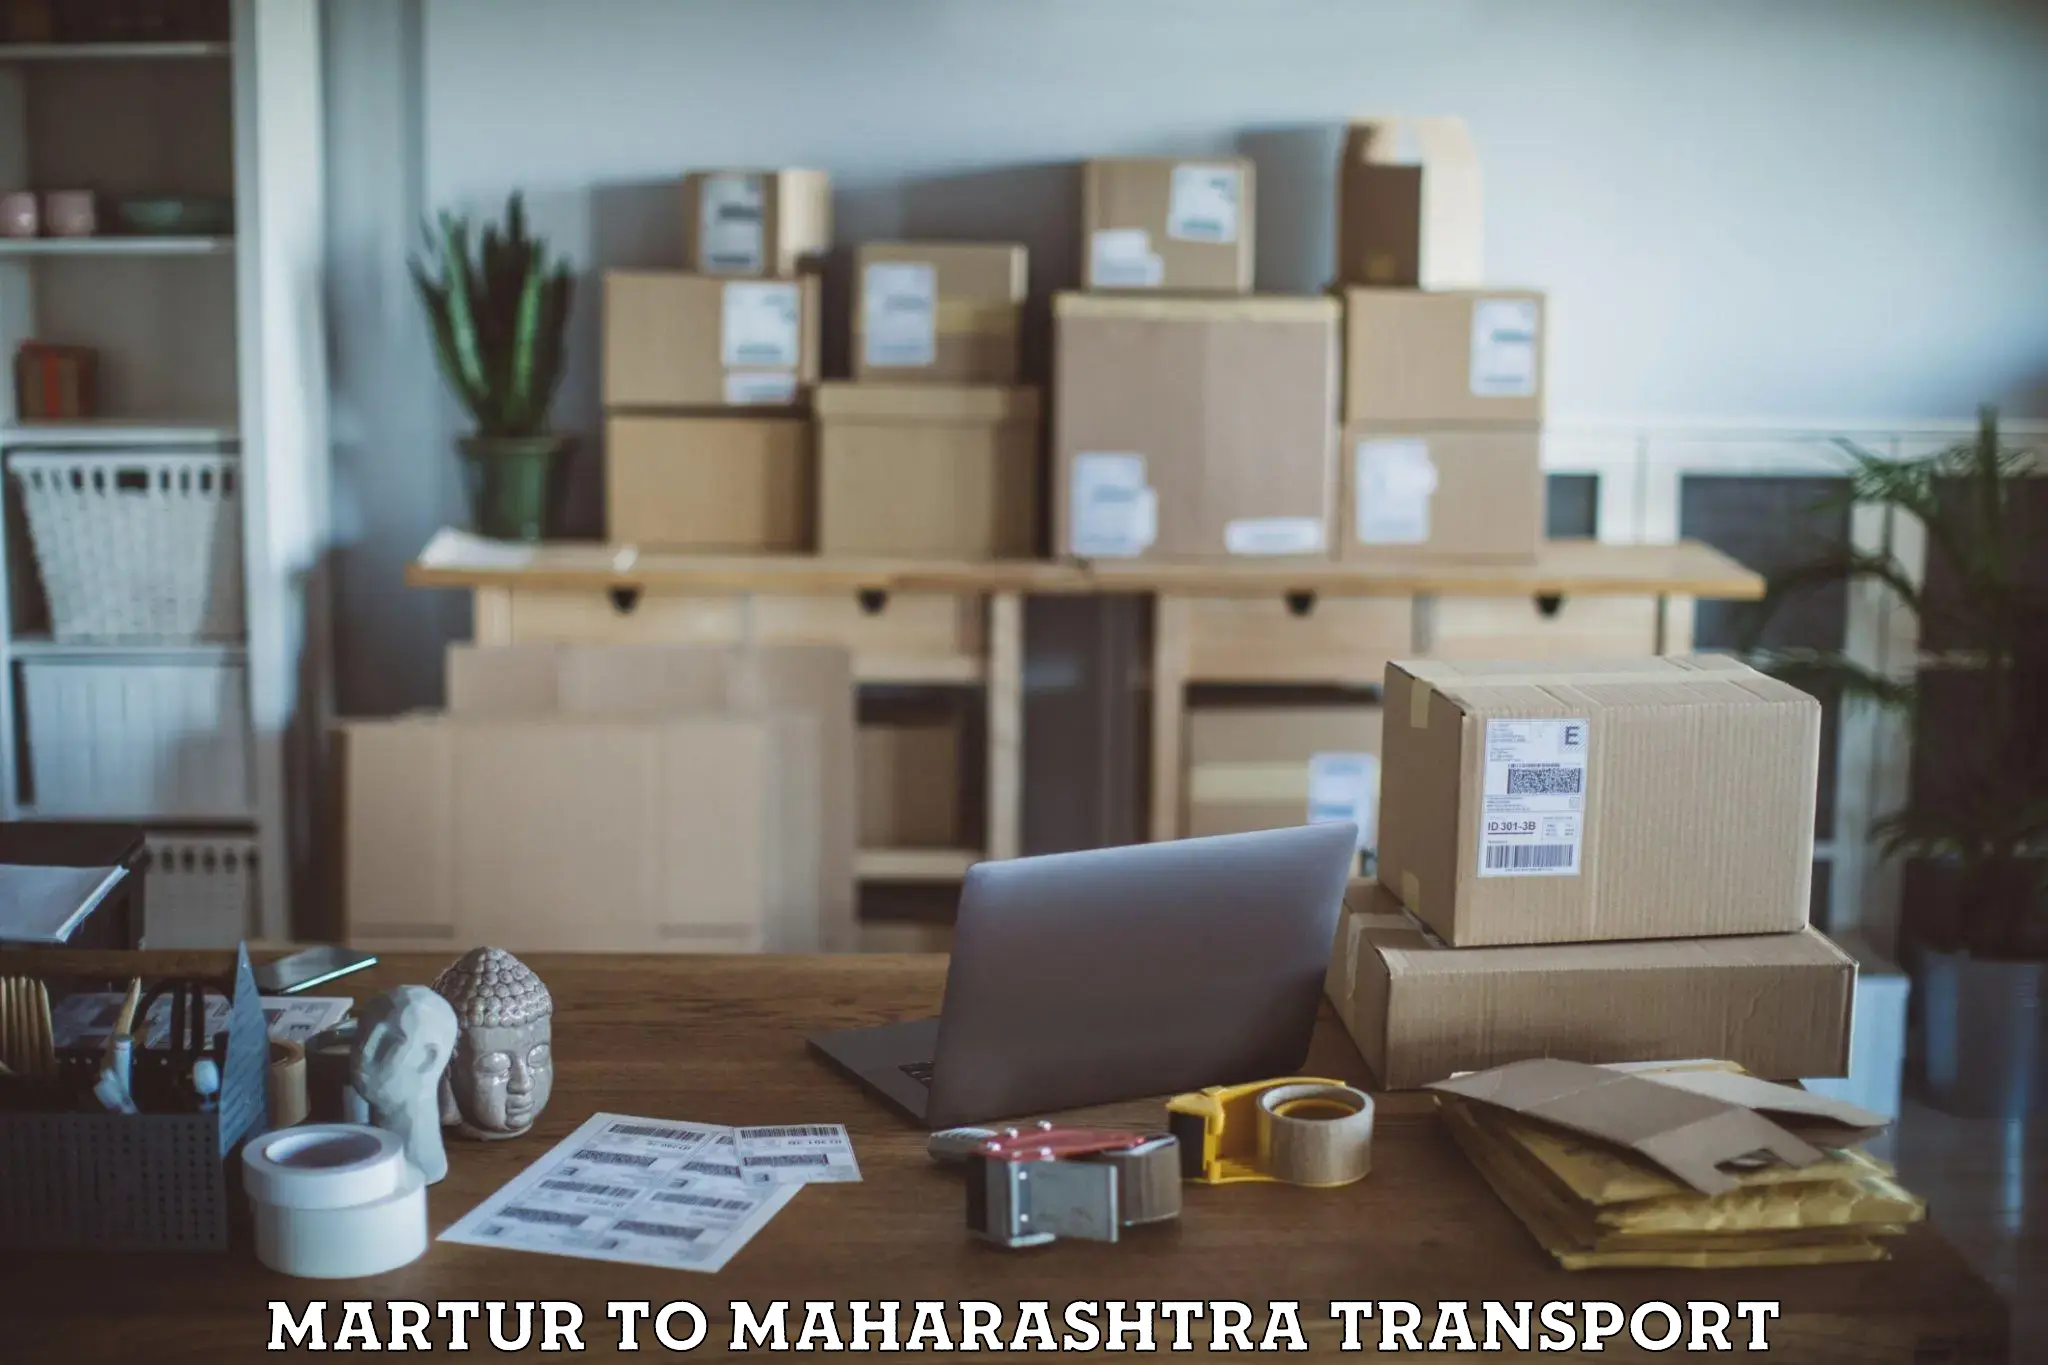 Shipping partner Martur to Maharashtra